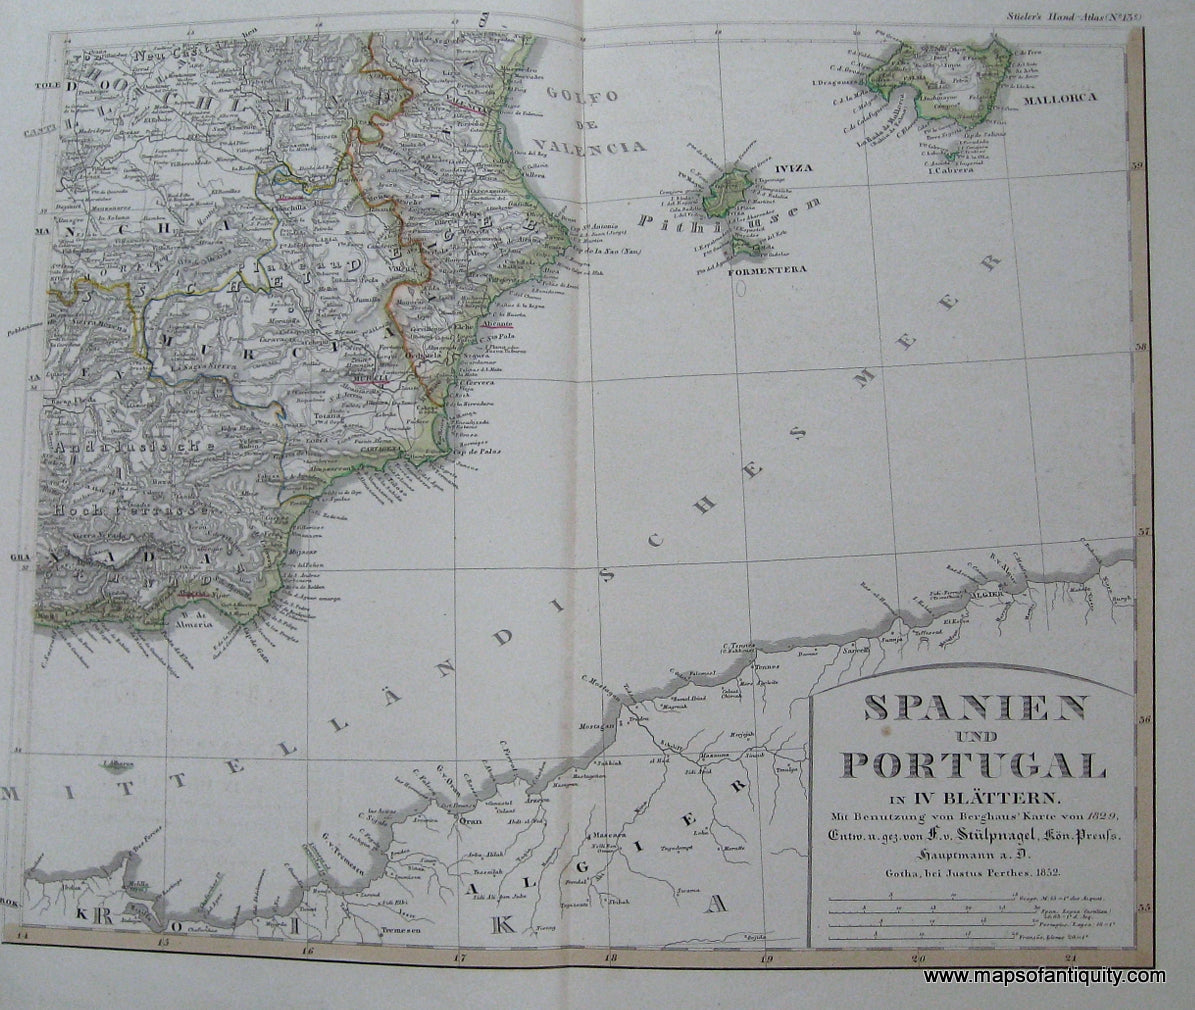 Antique-Hand-Colored-Map-Spain-and-Portugal---Spanien-und-Portugal-in-IV-Blattern-mit-Benutzung-von-Berghaus-Karte-von-1829.-Eintheiling-Spaniens.-Valencia-Murcia-Iviza-Mallorca.-Europe-Spain-and-Portugal-circa-1852-Stieler-Maps-Of-Antiquity